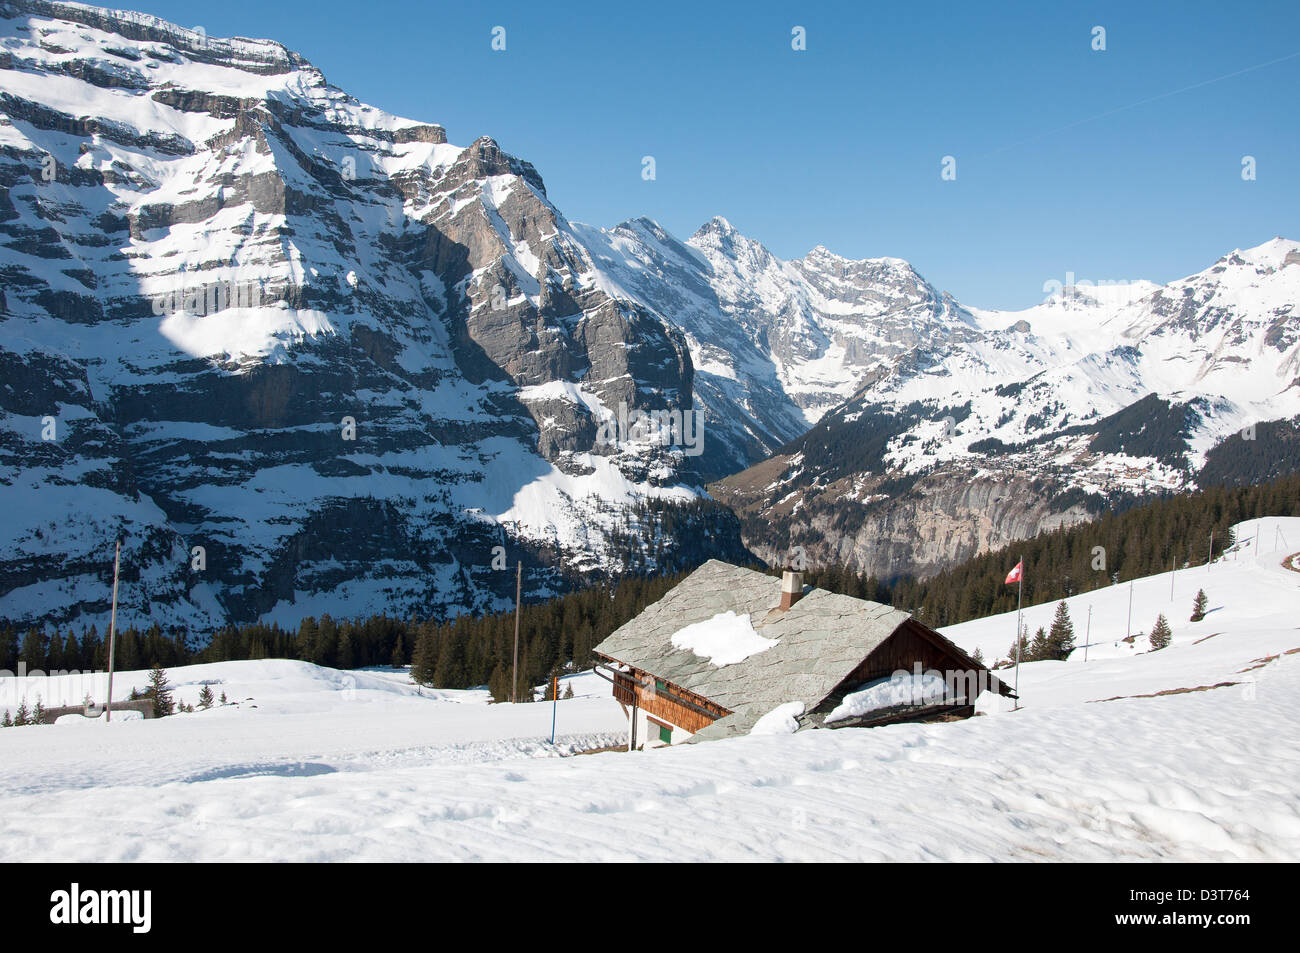 Une cabane couverte de neige entouré de sommets enneigés, Alpes Suisses Banque D'Images